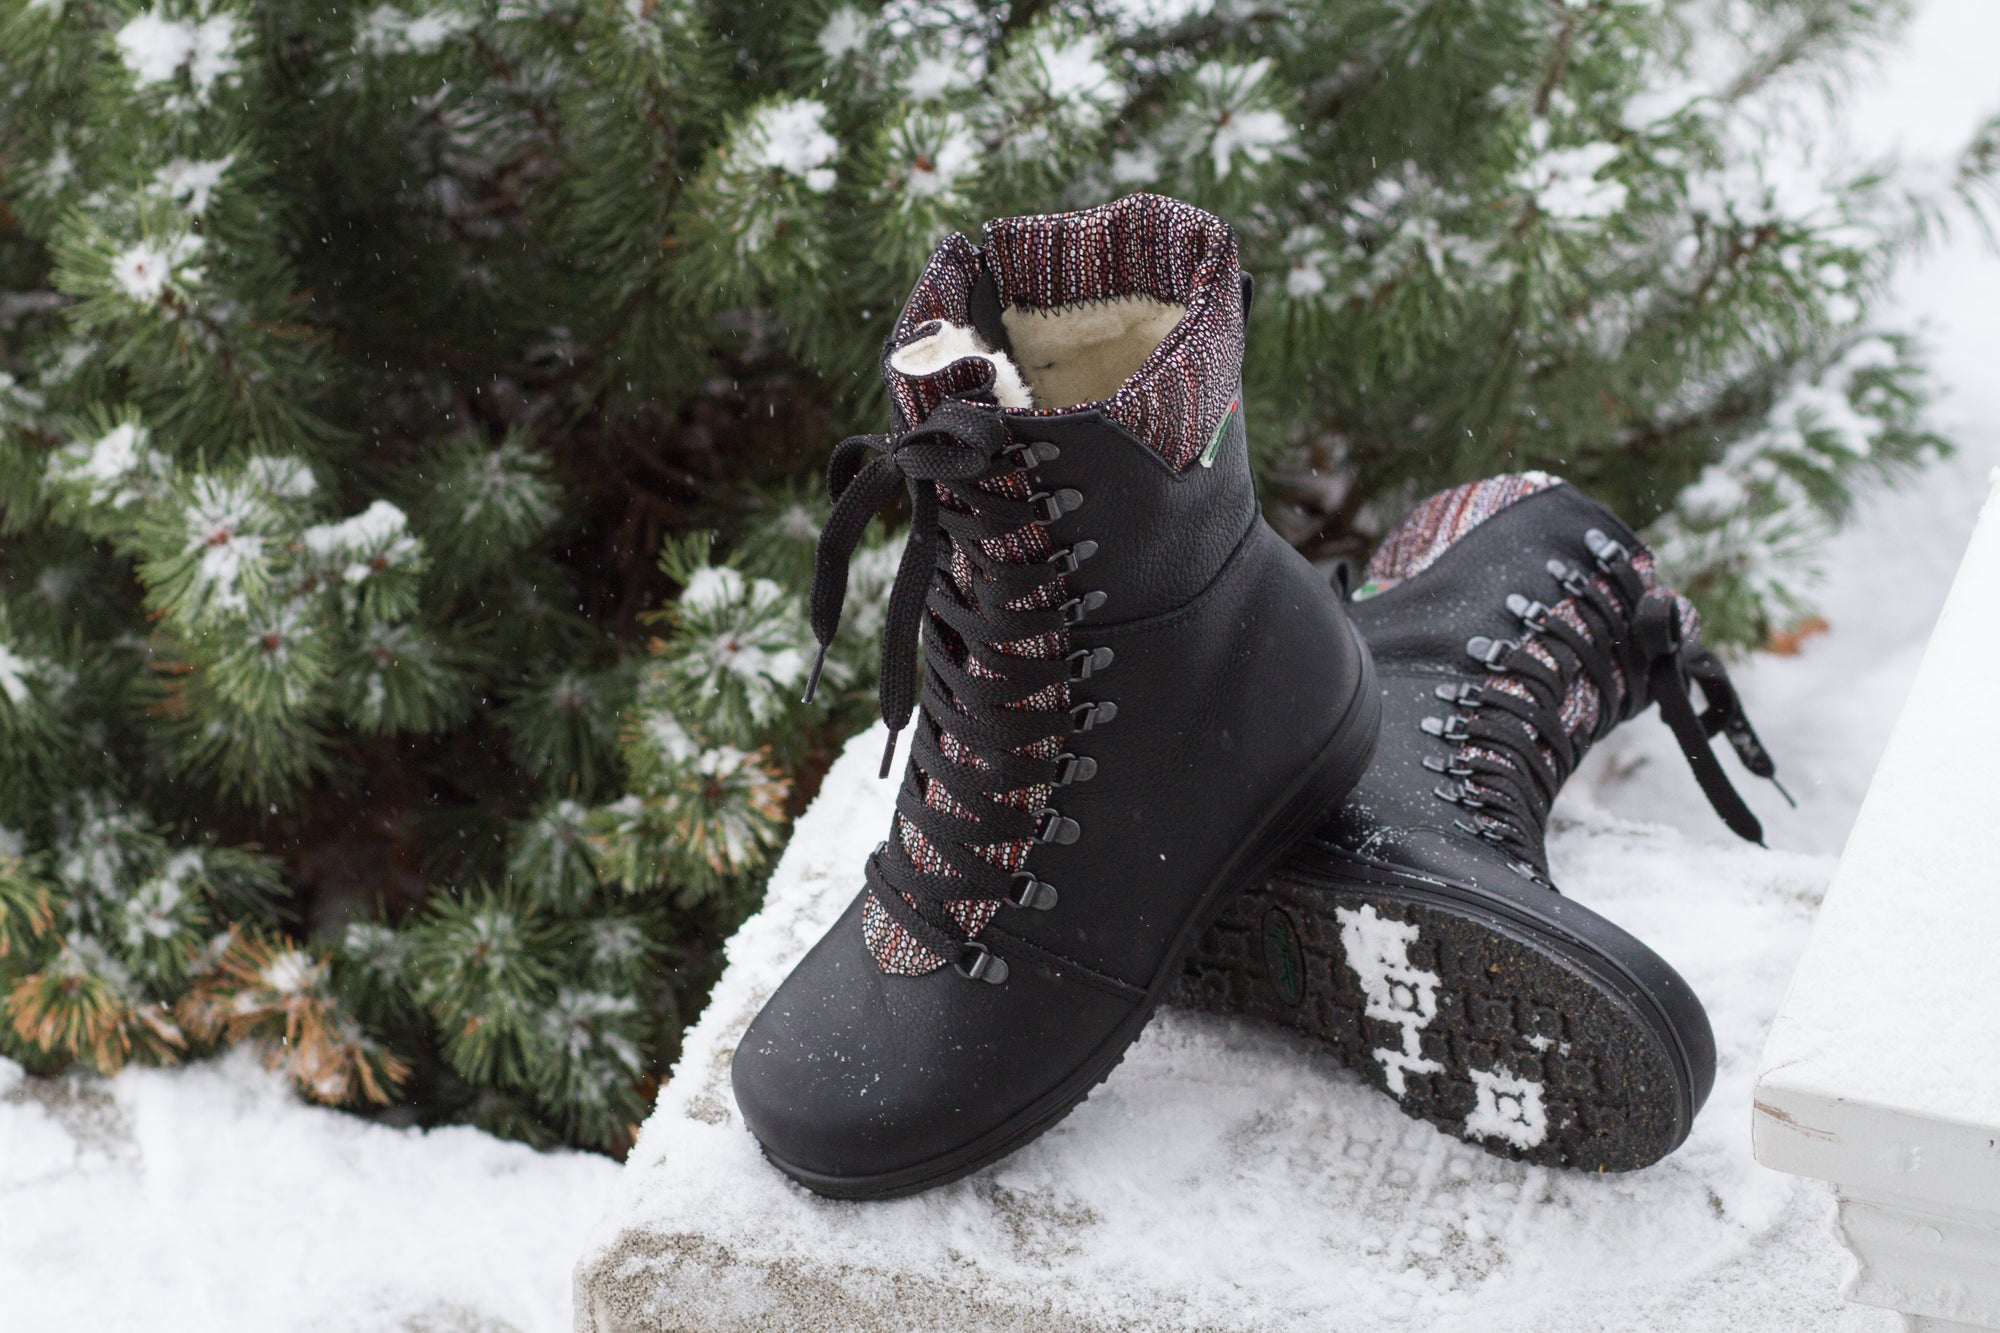 Banff winter boot for women - Tan-Navy